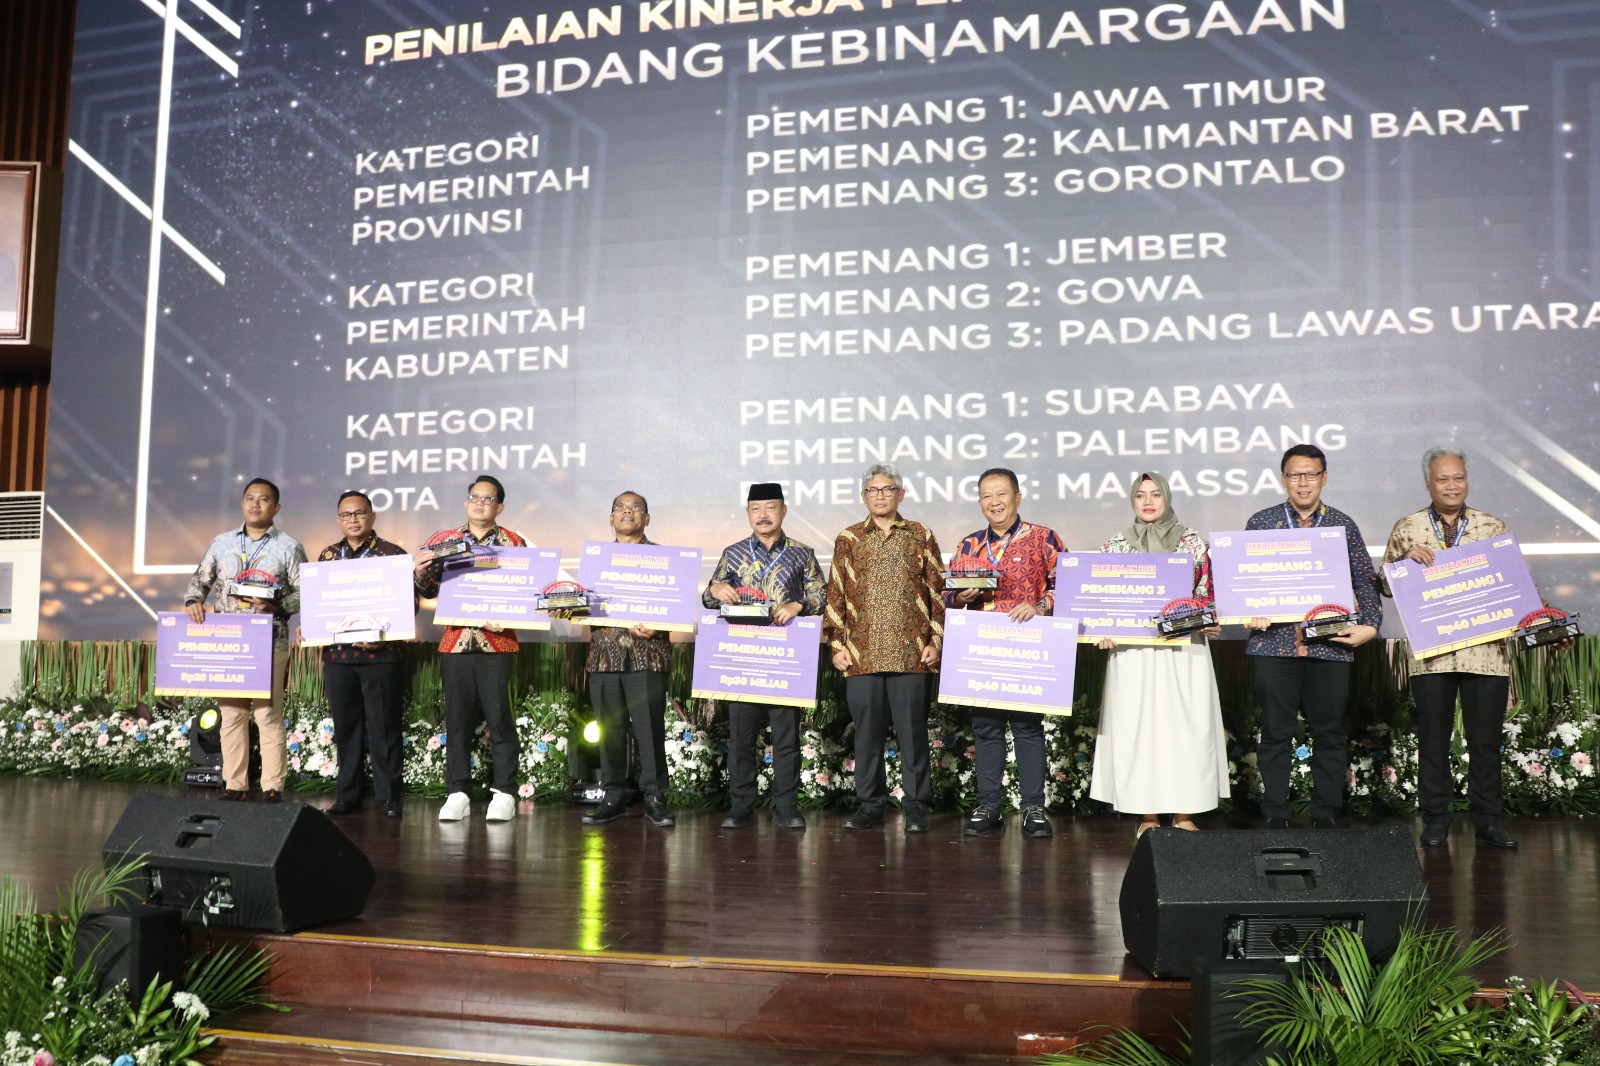 Luar Biasa! Pemkot Palembang Sabet 2 Gelar Juara Nasional Bidang Kebinamargaan dari Kementerian PUPR